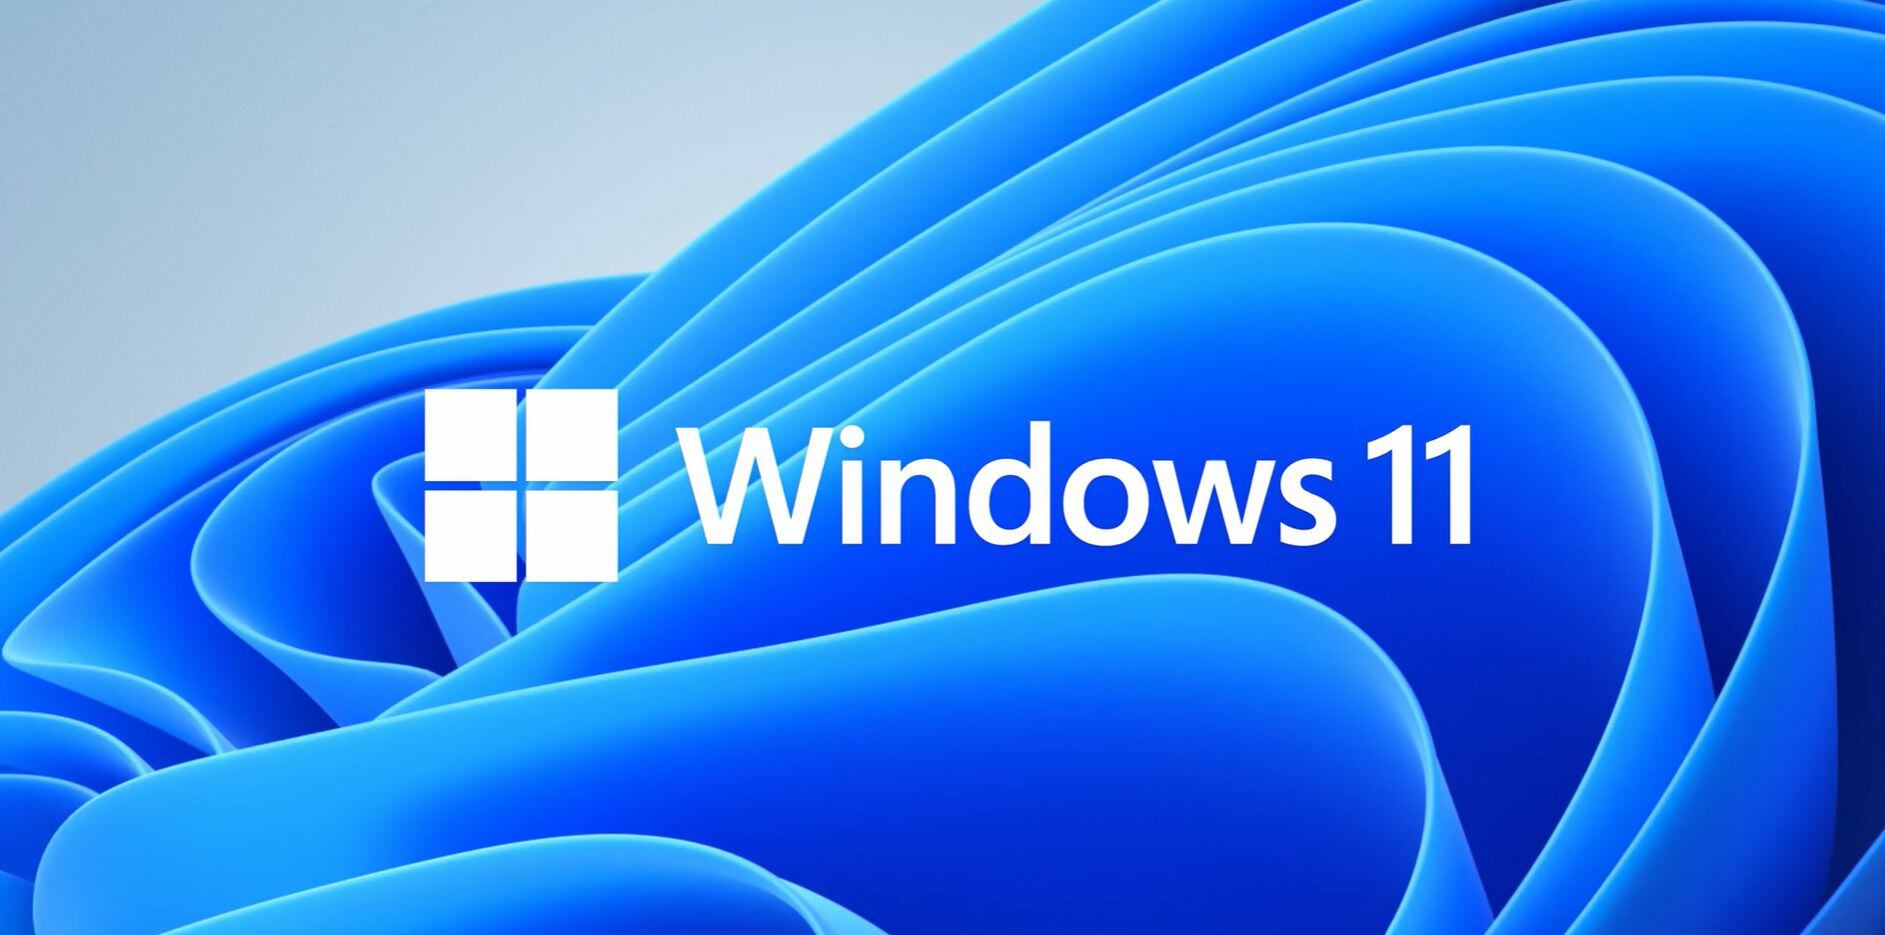 Microsoft ha comenzado a habilitar las funcionalidades de corrección ortográfica y automática en el Bloc de notas para todos los usuarios de Windows 11.